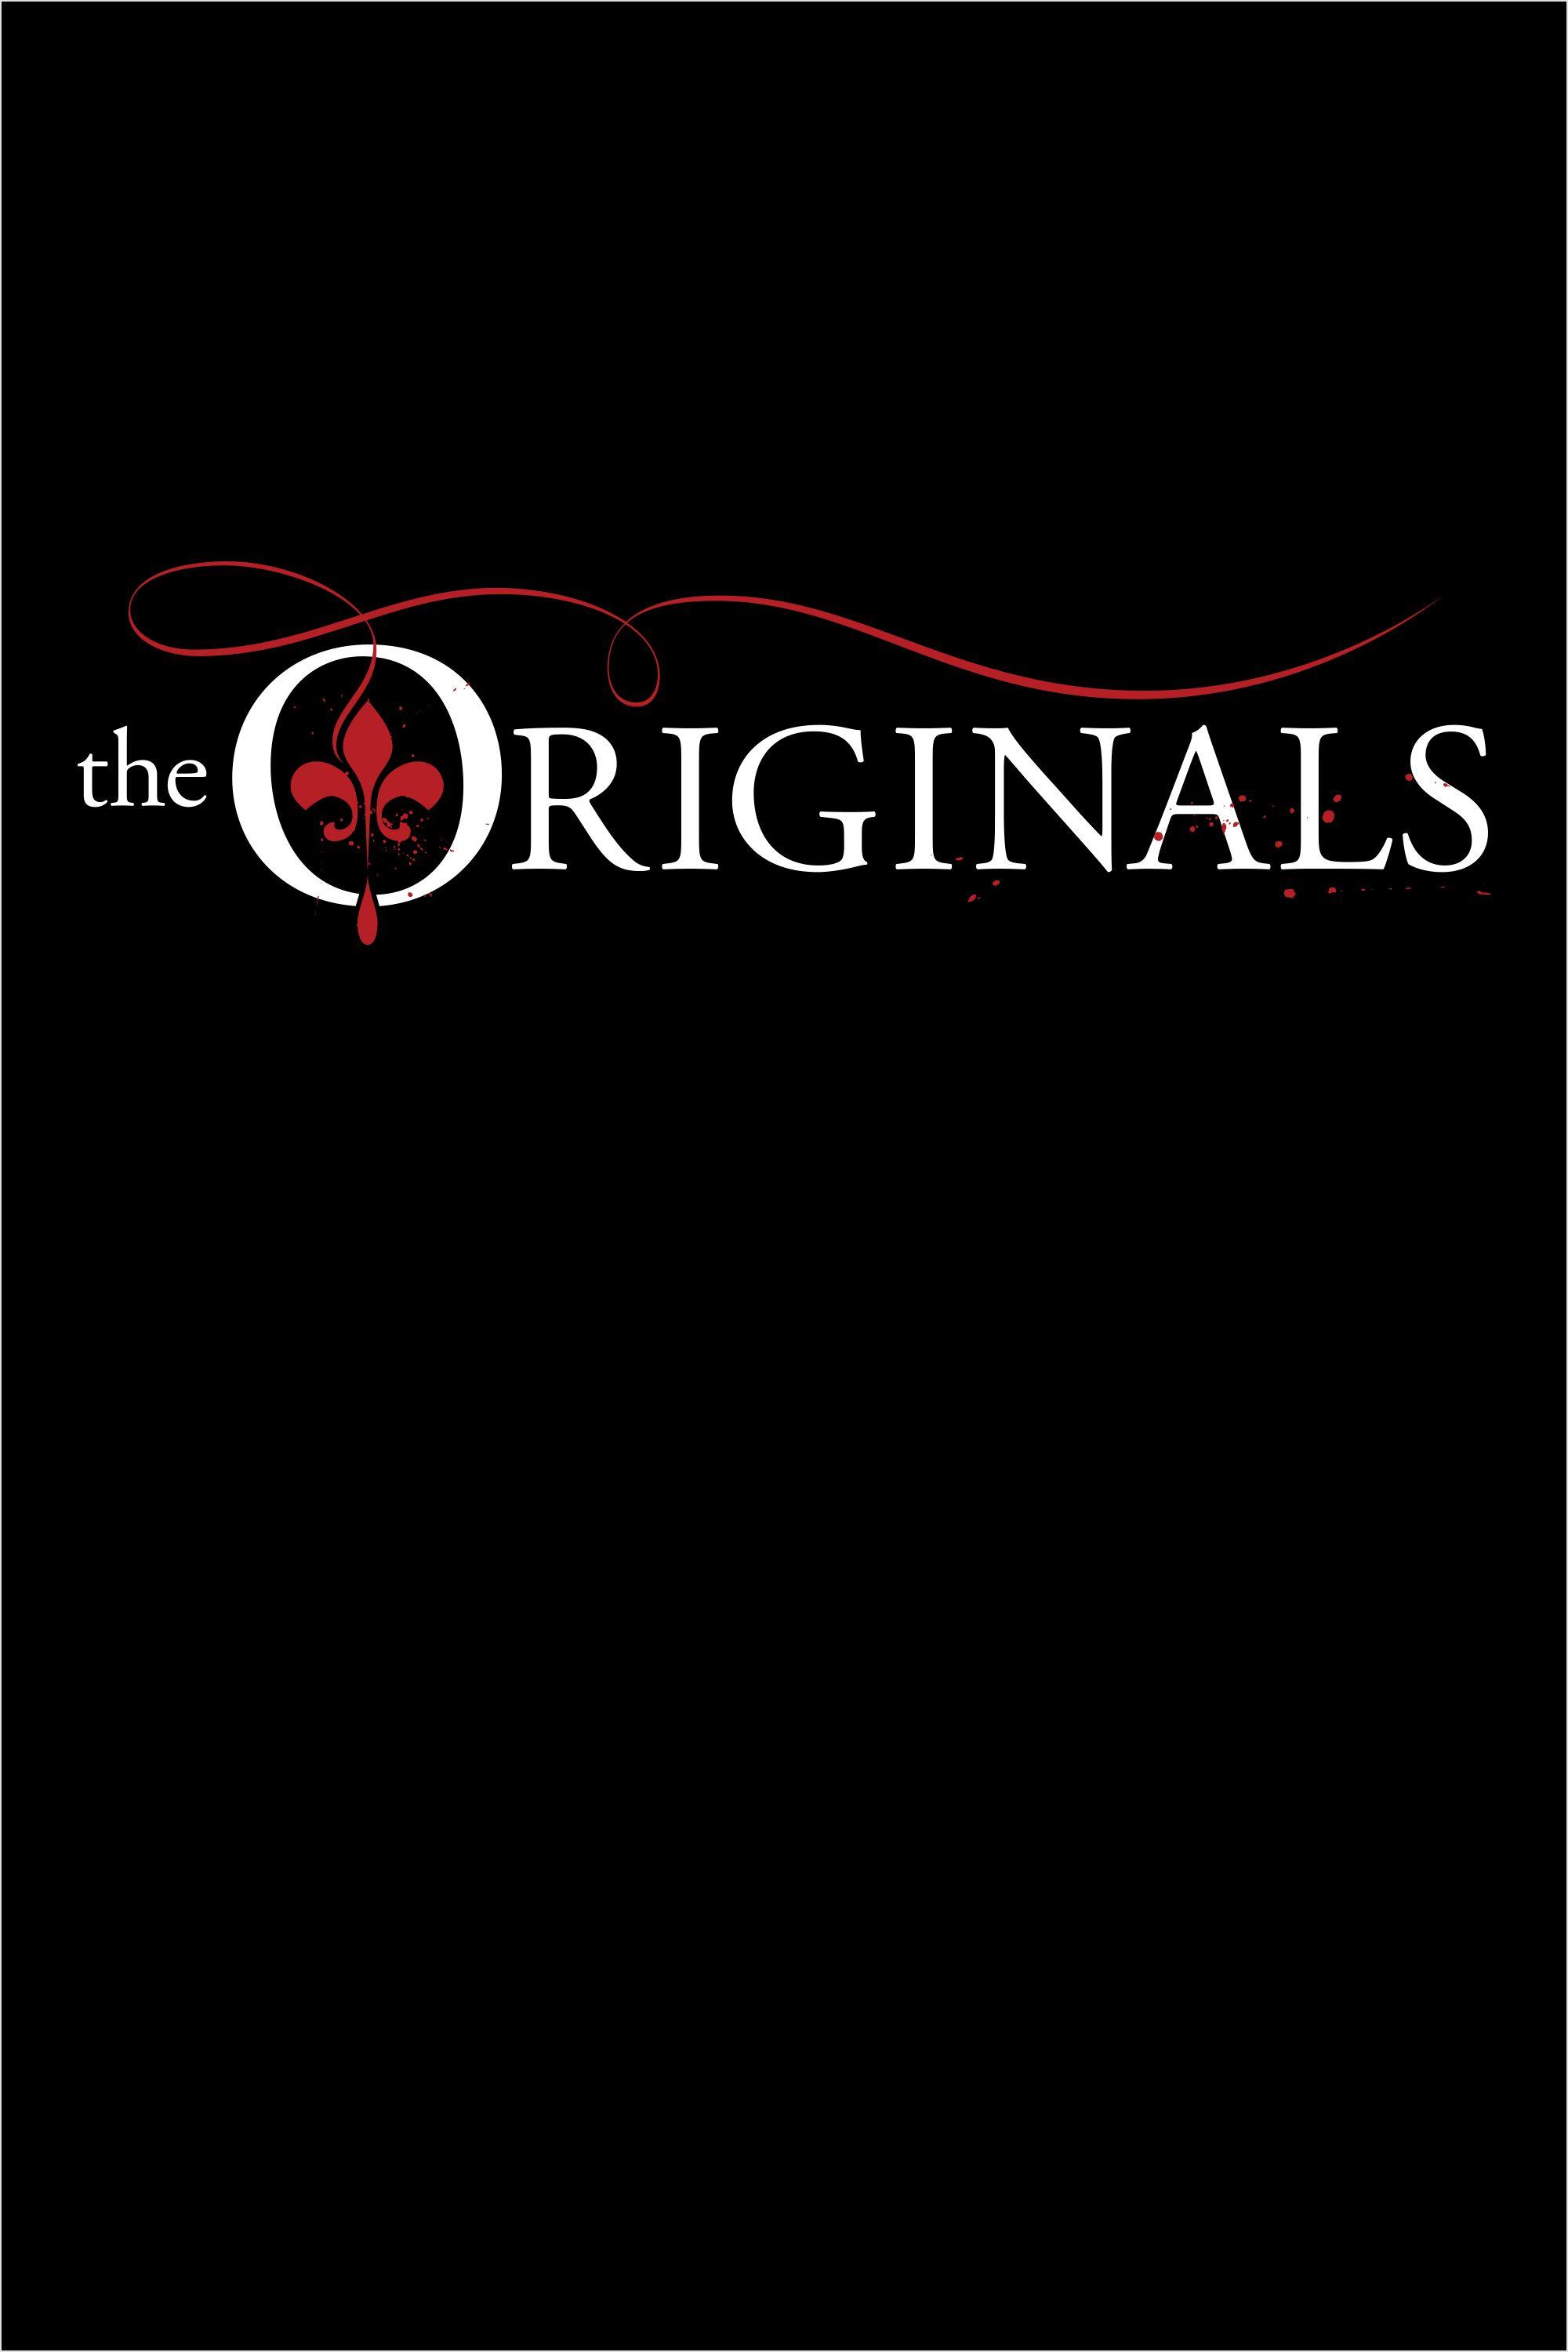 Vampire Original Logo - The ORIGINALS in 2019